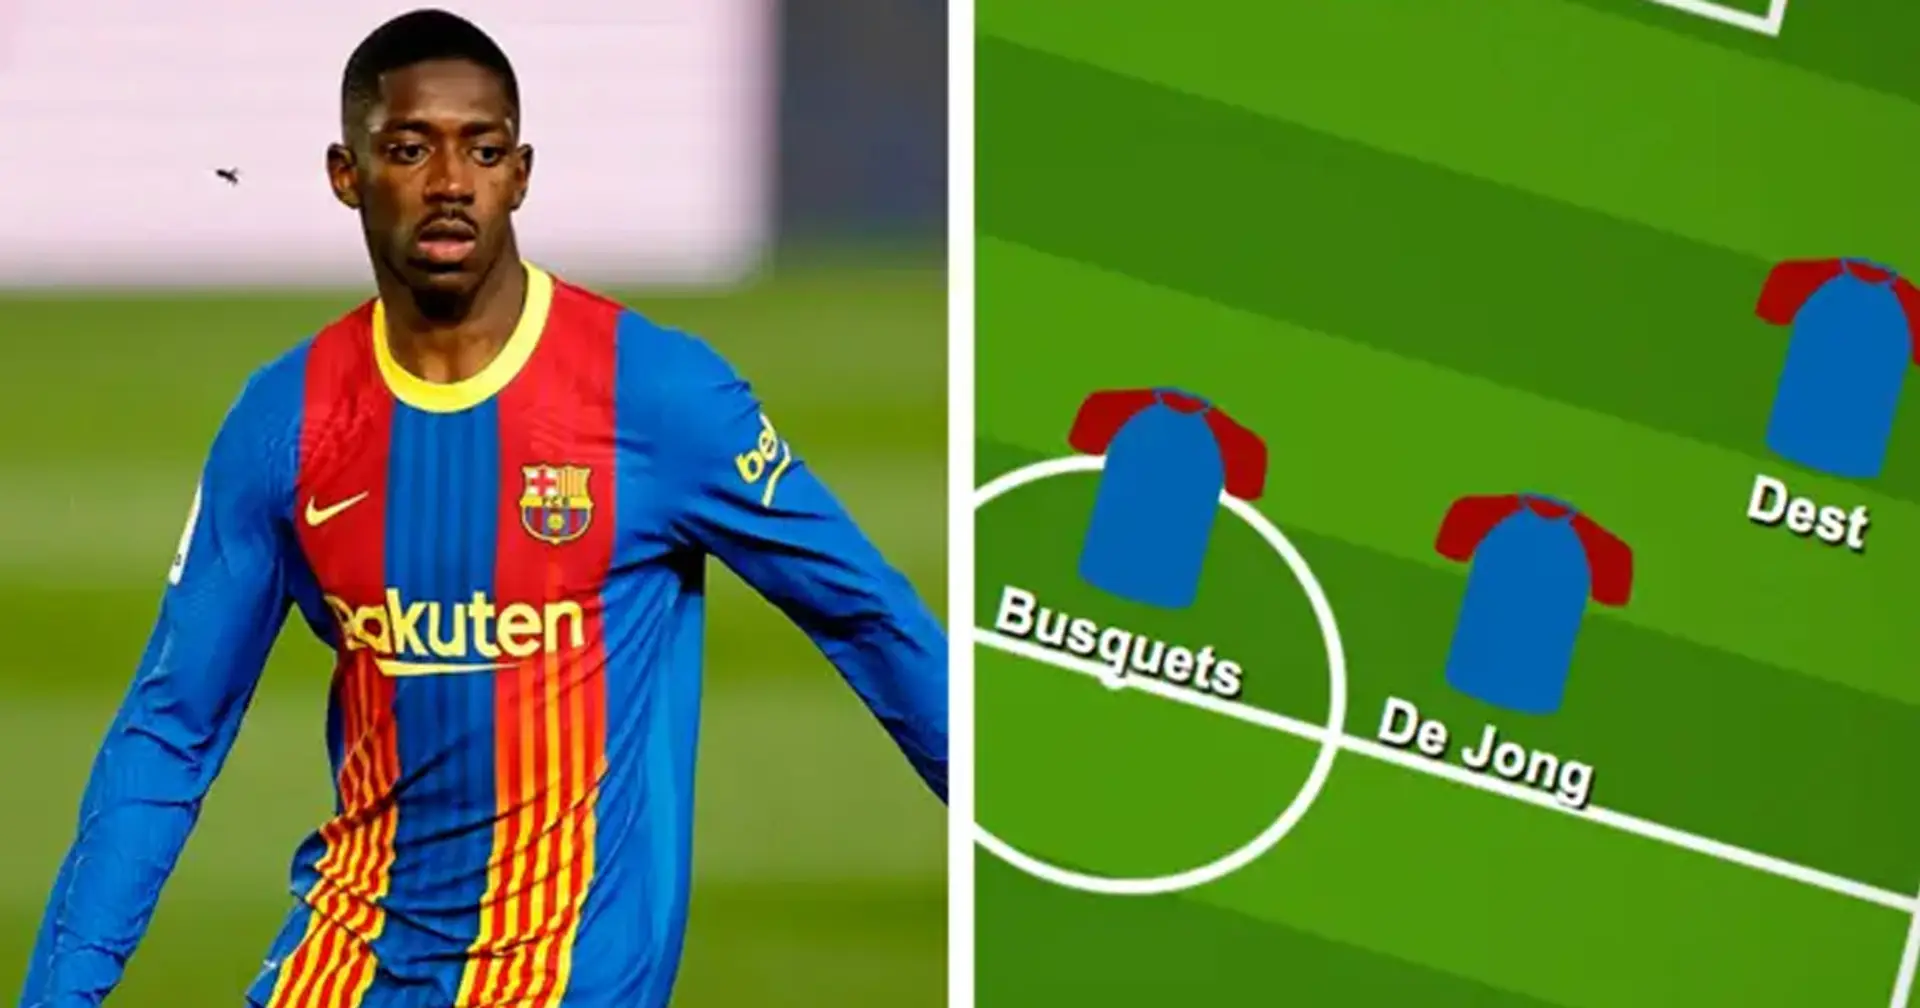 ¿Dembélé al banquillo? Elige tu Xl favorito del Barça vs Granada de estas 3 opciones